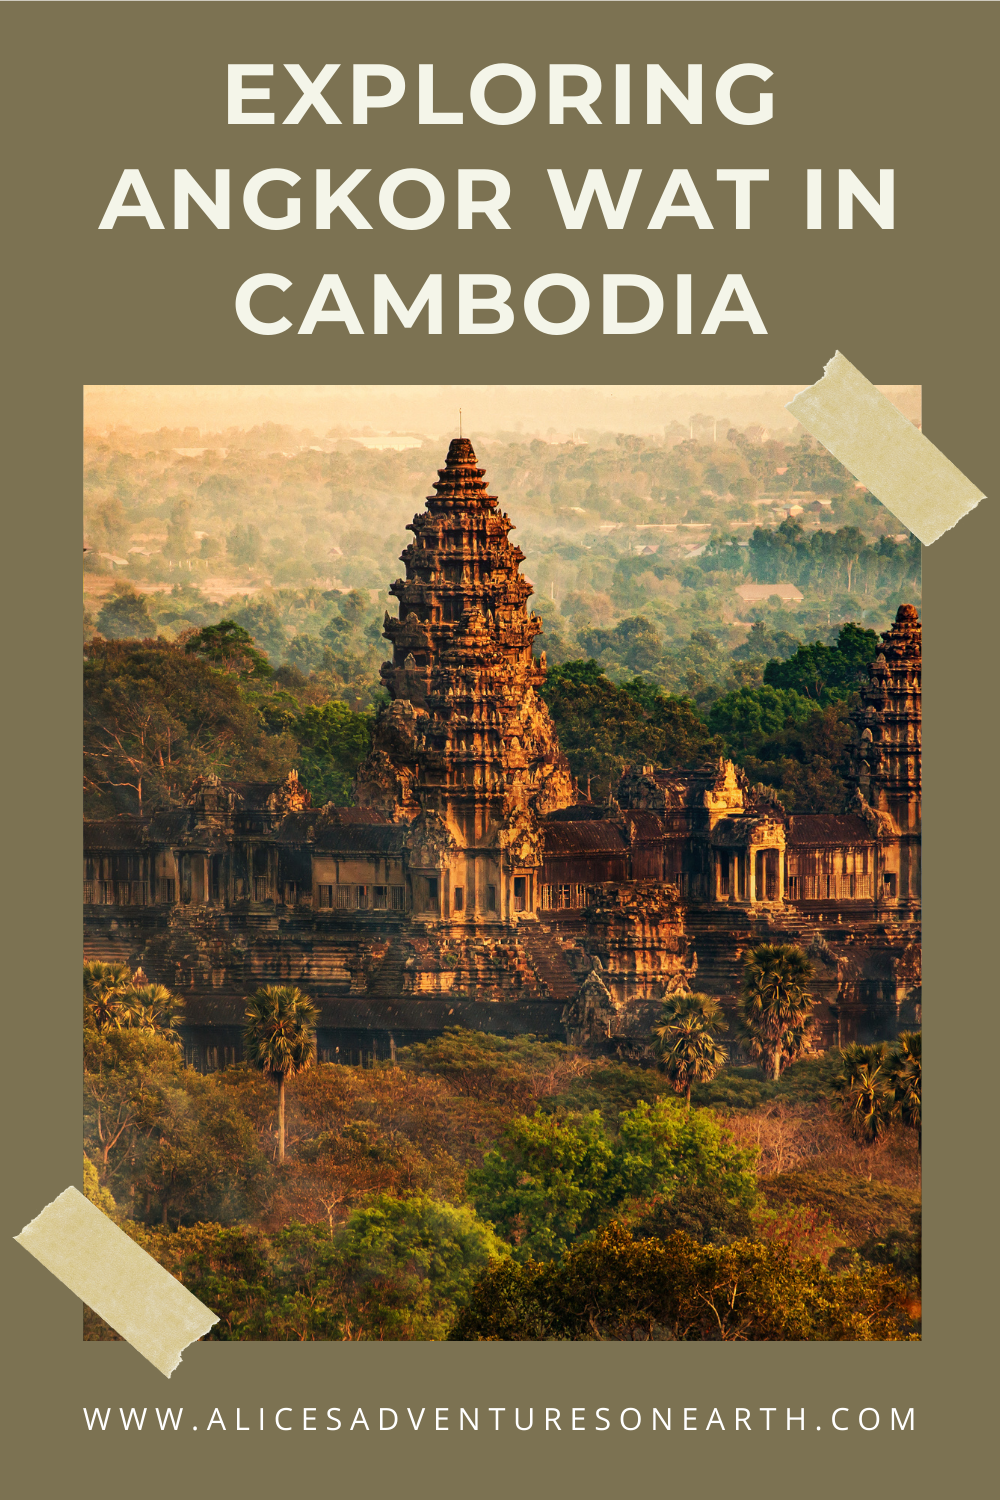 Explore Cambodia - ruins of Angkor Wat